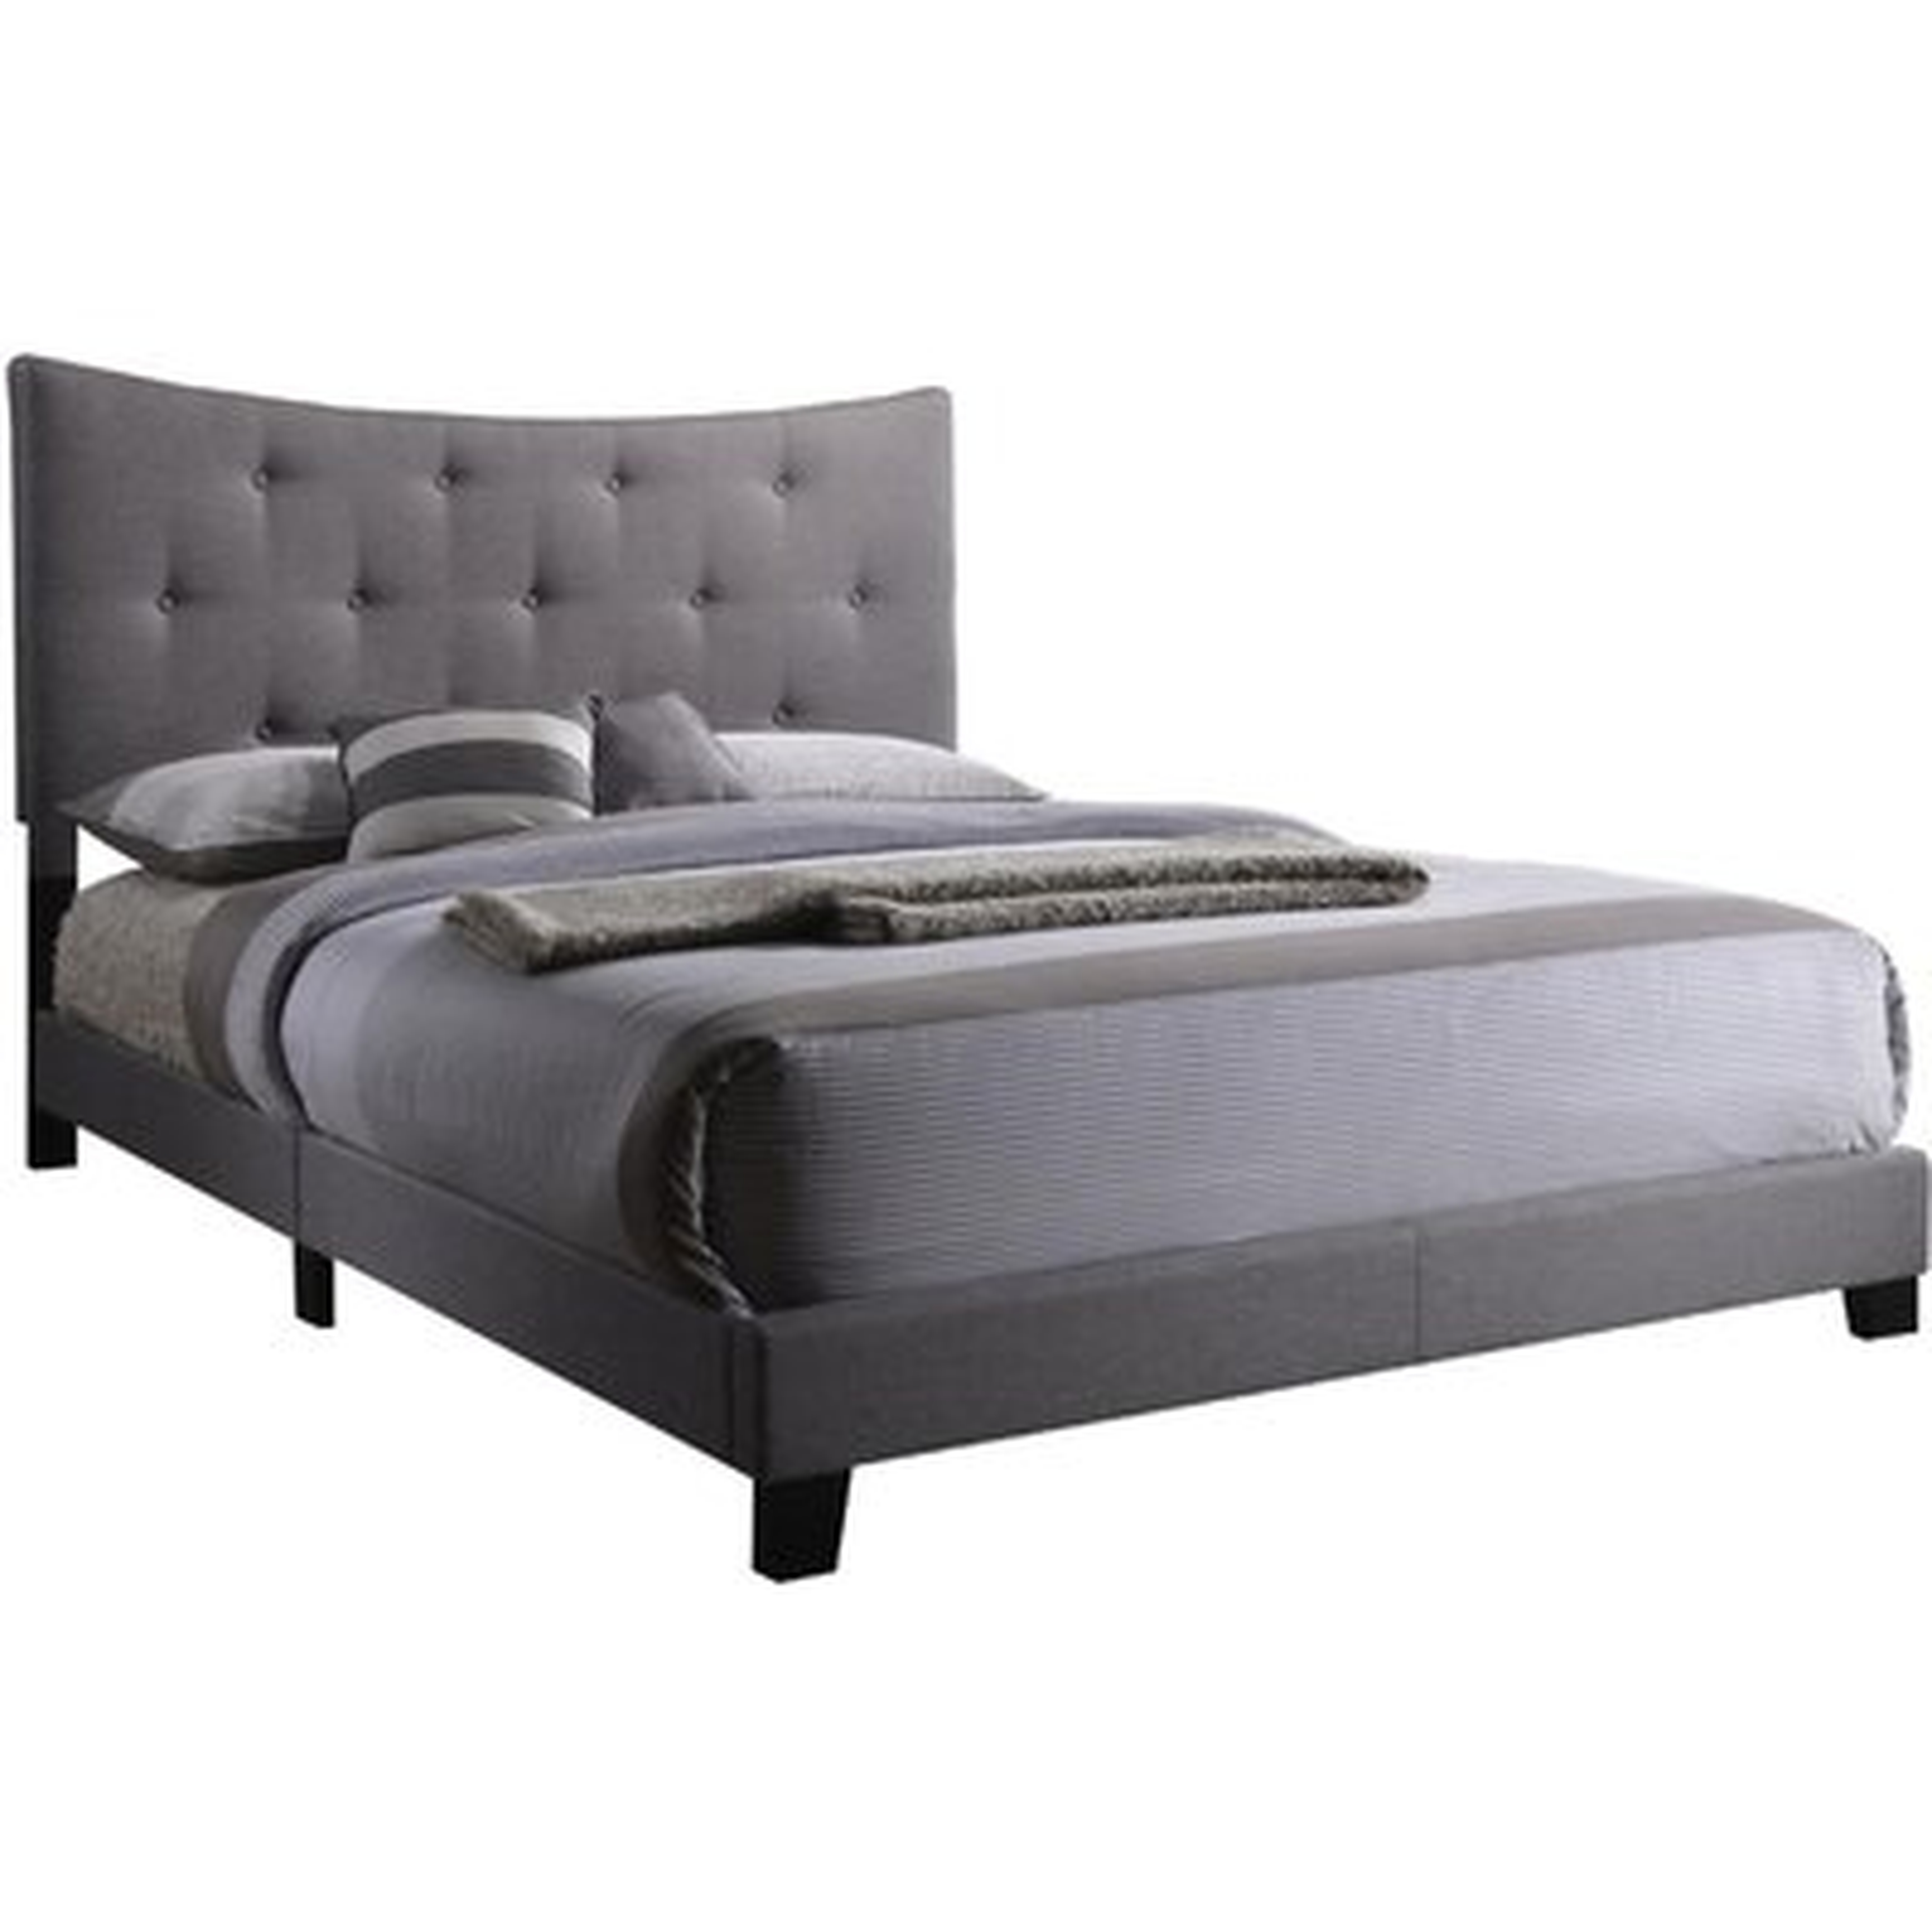 Queen Bed In Gray Fabric - Wayfair